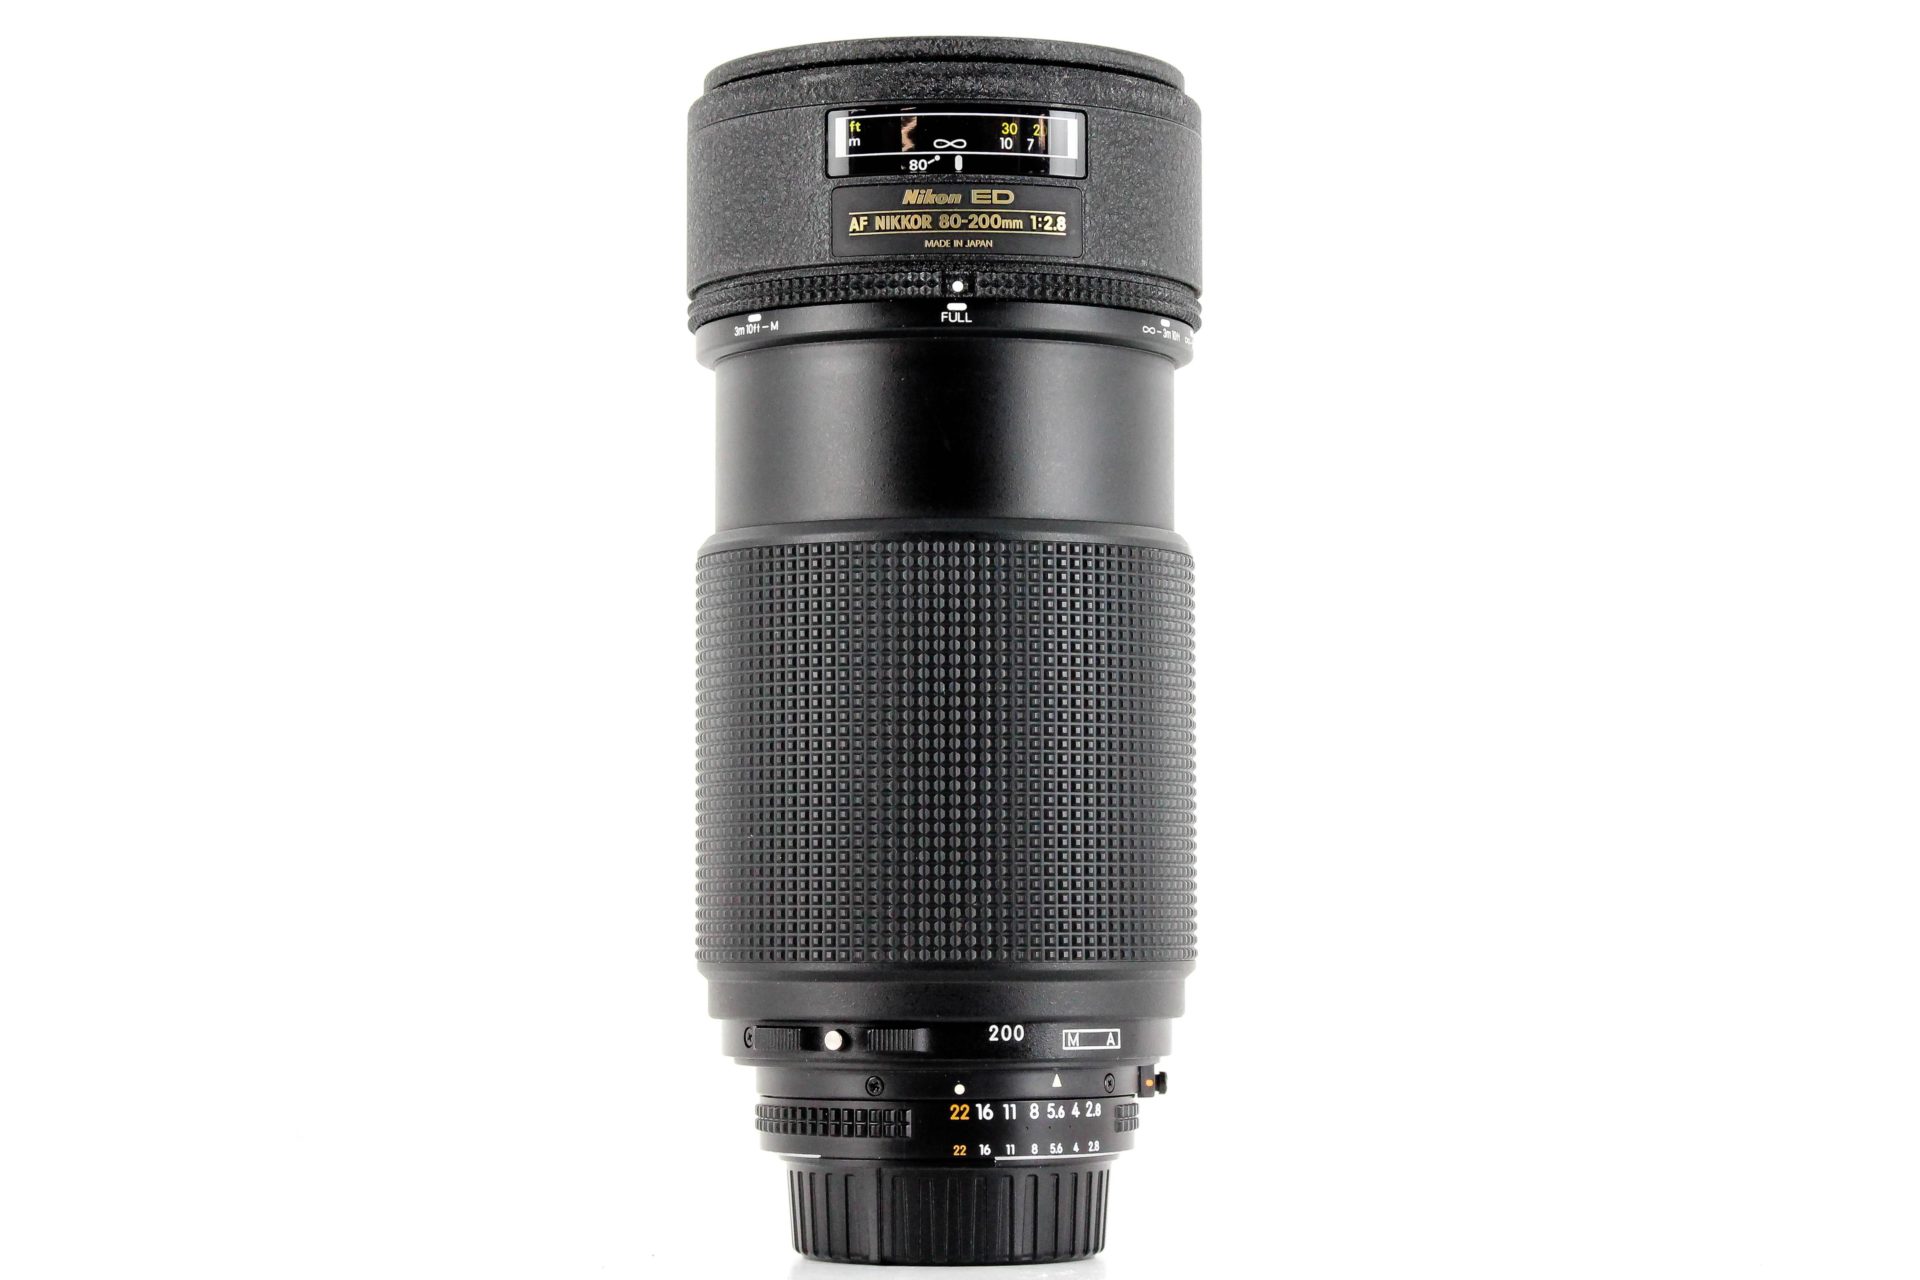 Nikon AF Nikkor 80-200mm f/2.8 ED One Touch Lens